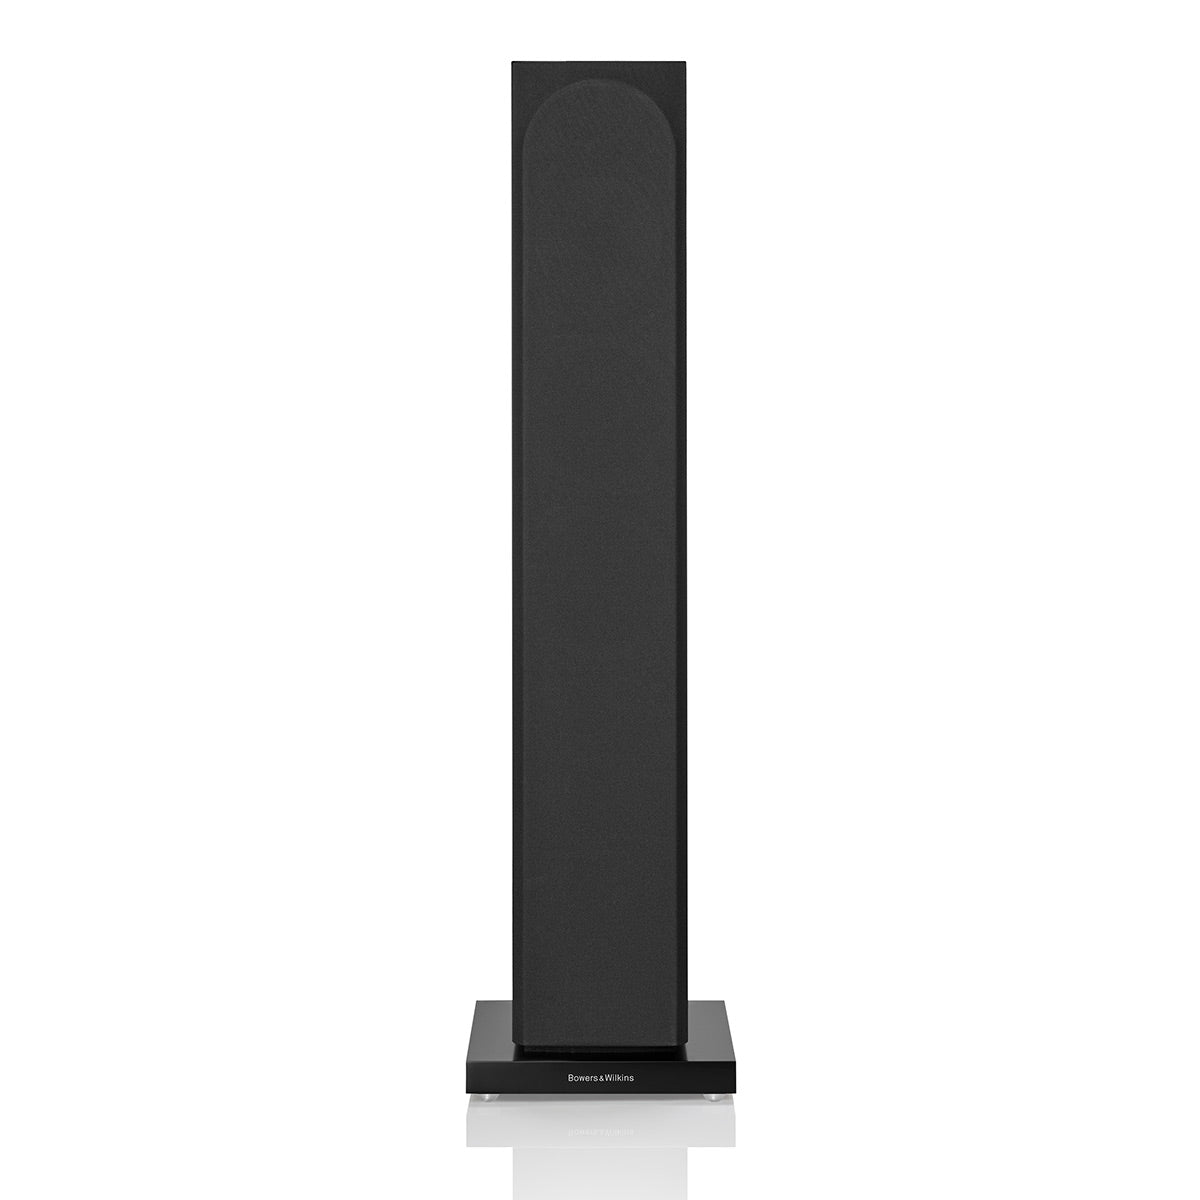 Bowers & Wilkins 704 S3 3-Way Floorstanding Speaker - Each (Gloss Black)